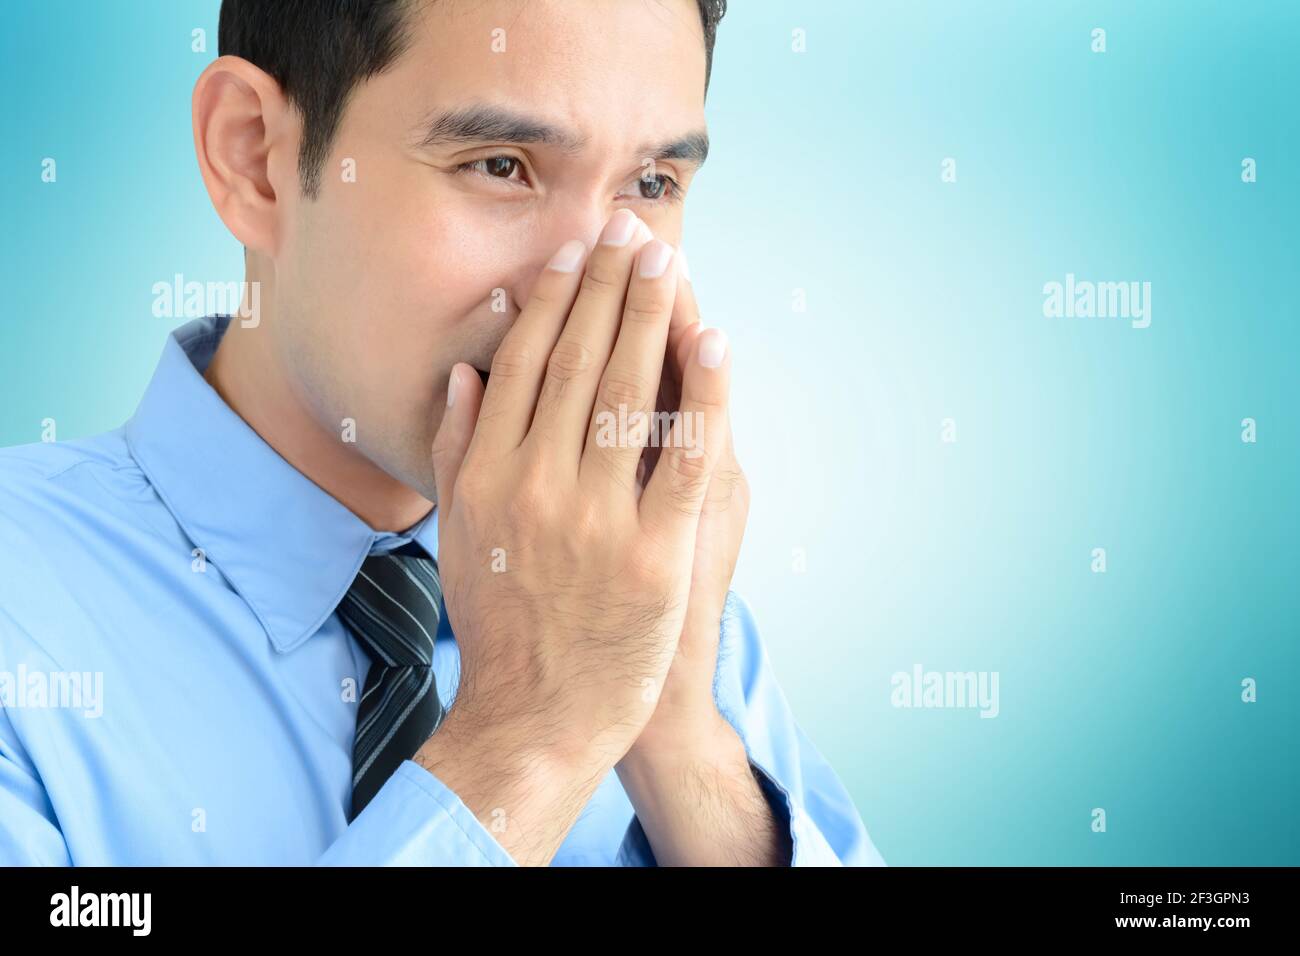 Un uomo starnutisce senza un tessuto o un panno che può diffondere la malattia Foto Stock